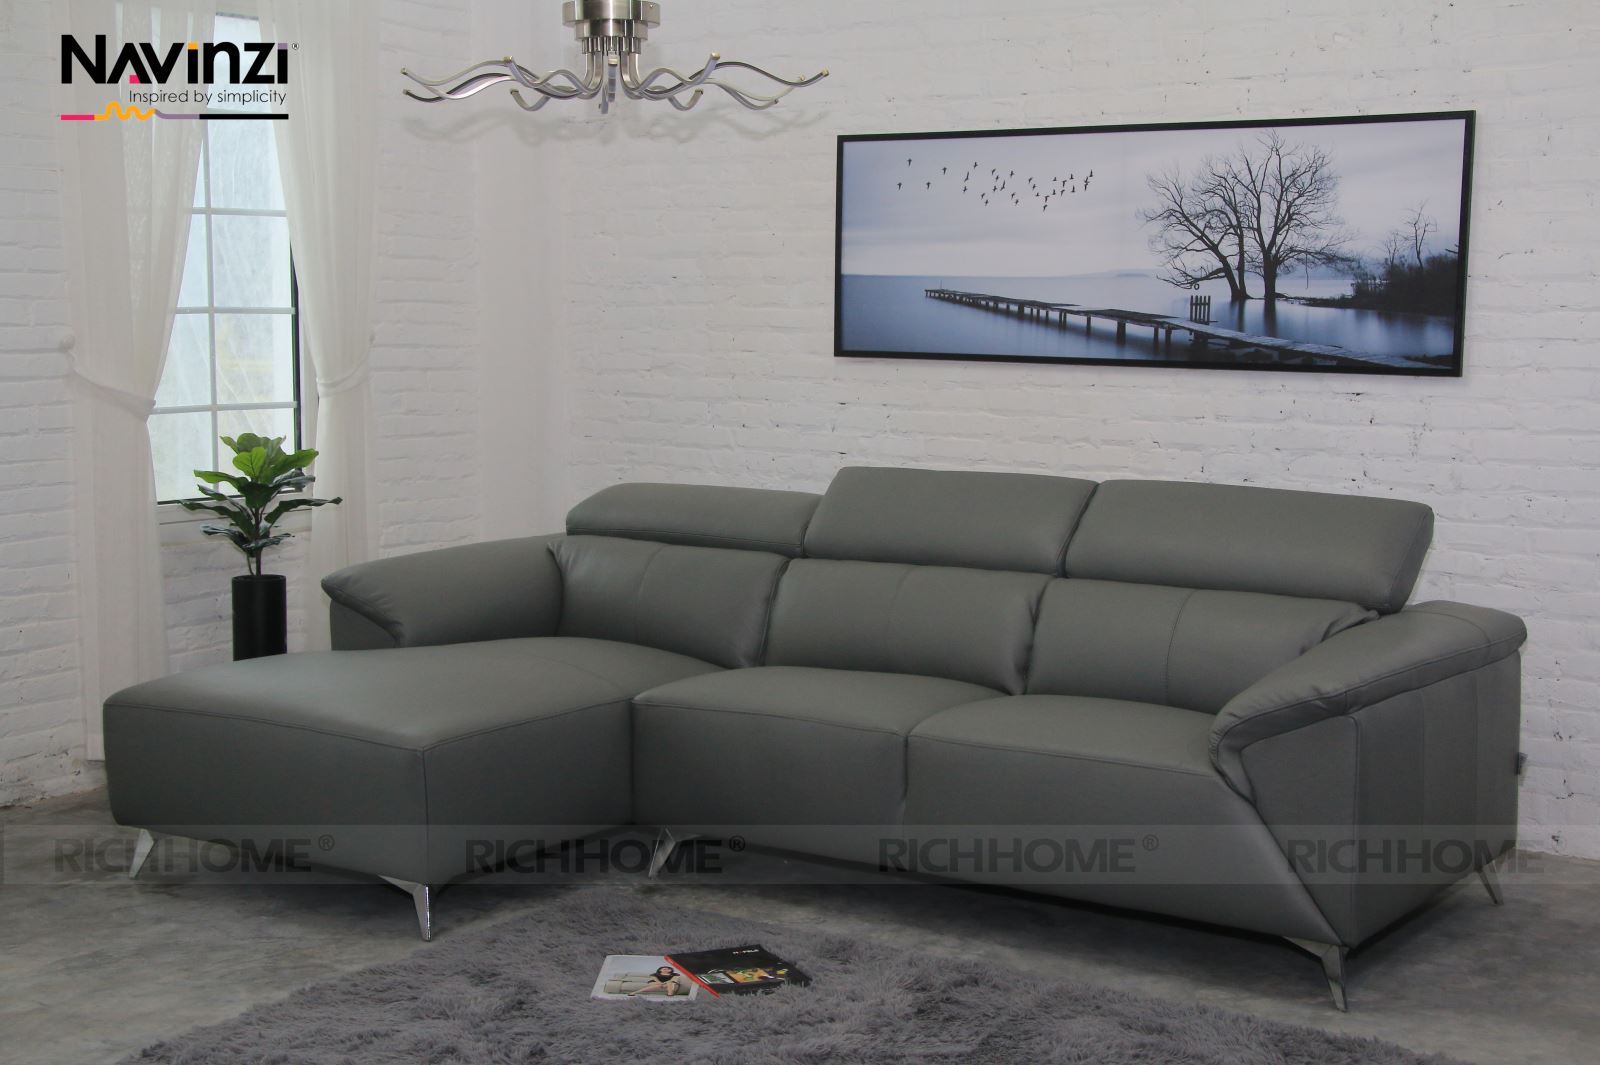 Những mẫu ghế sofa nhập khẩu chính hãng cao cấp - Ảnh 3